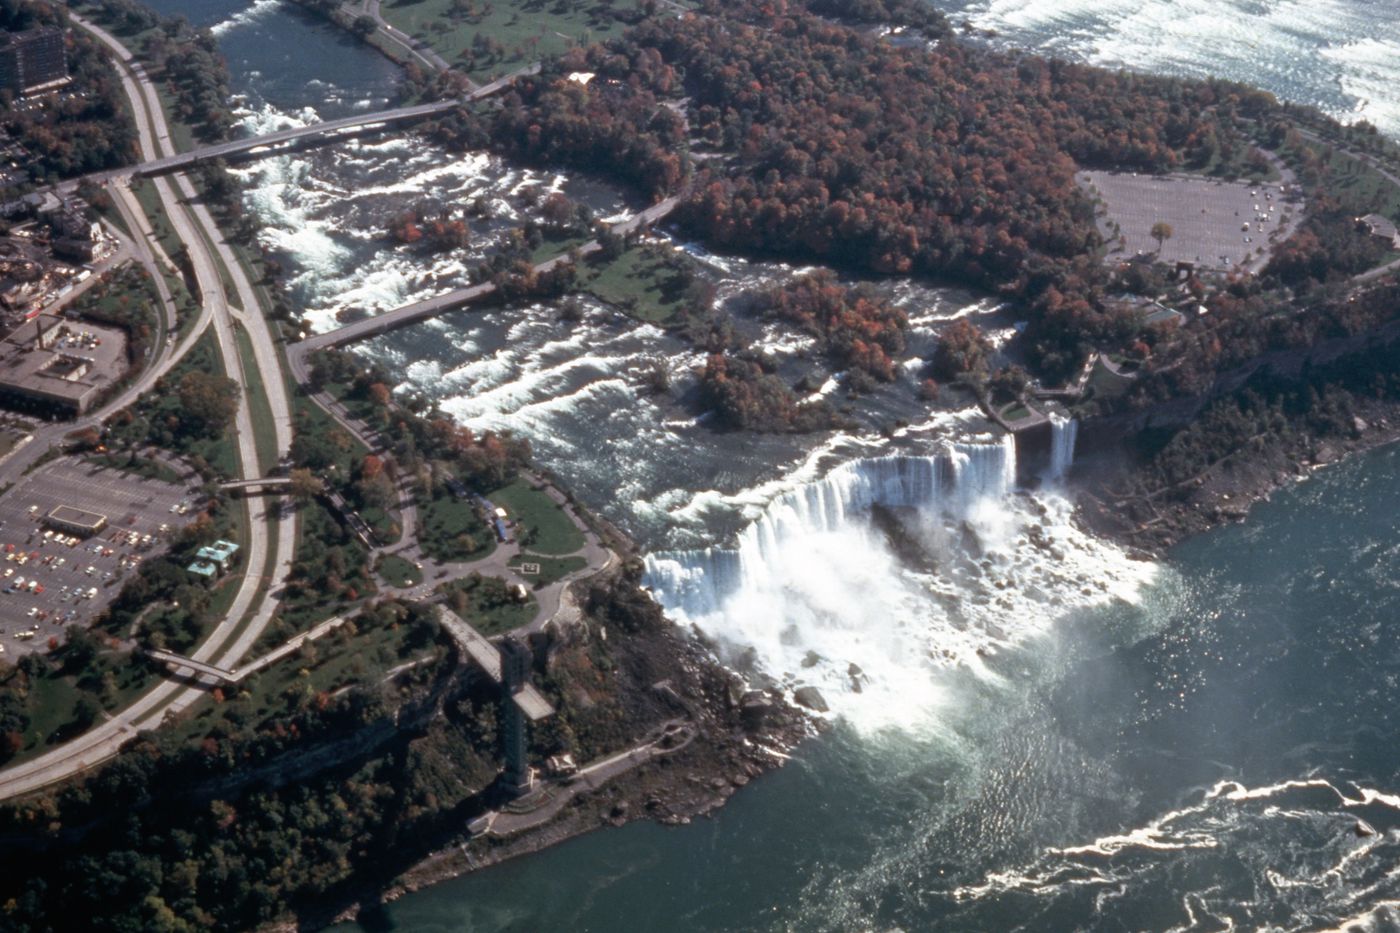 Photograph of Niagara Falls for research for Olmsted: L'origine del parco urbano e del parco naturale contemporaneo